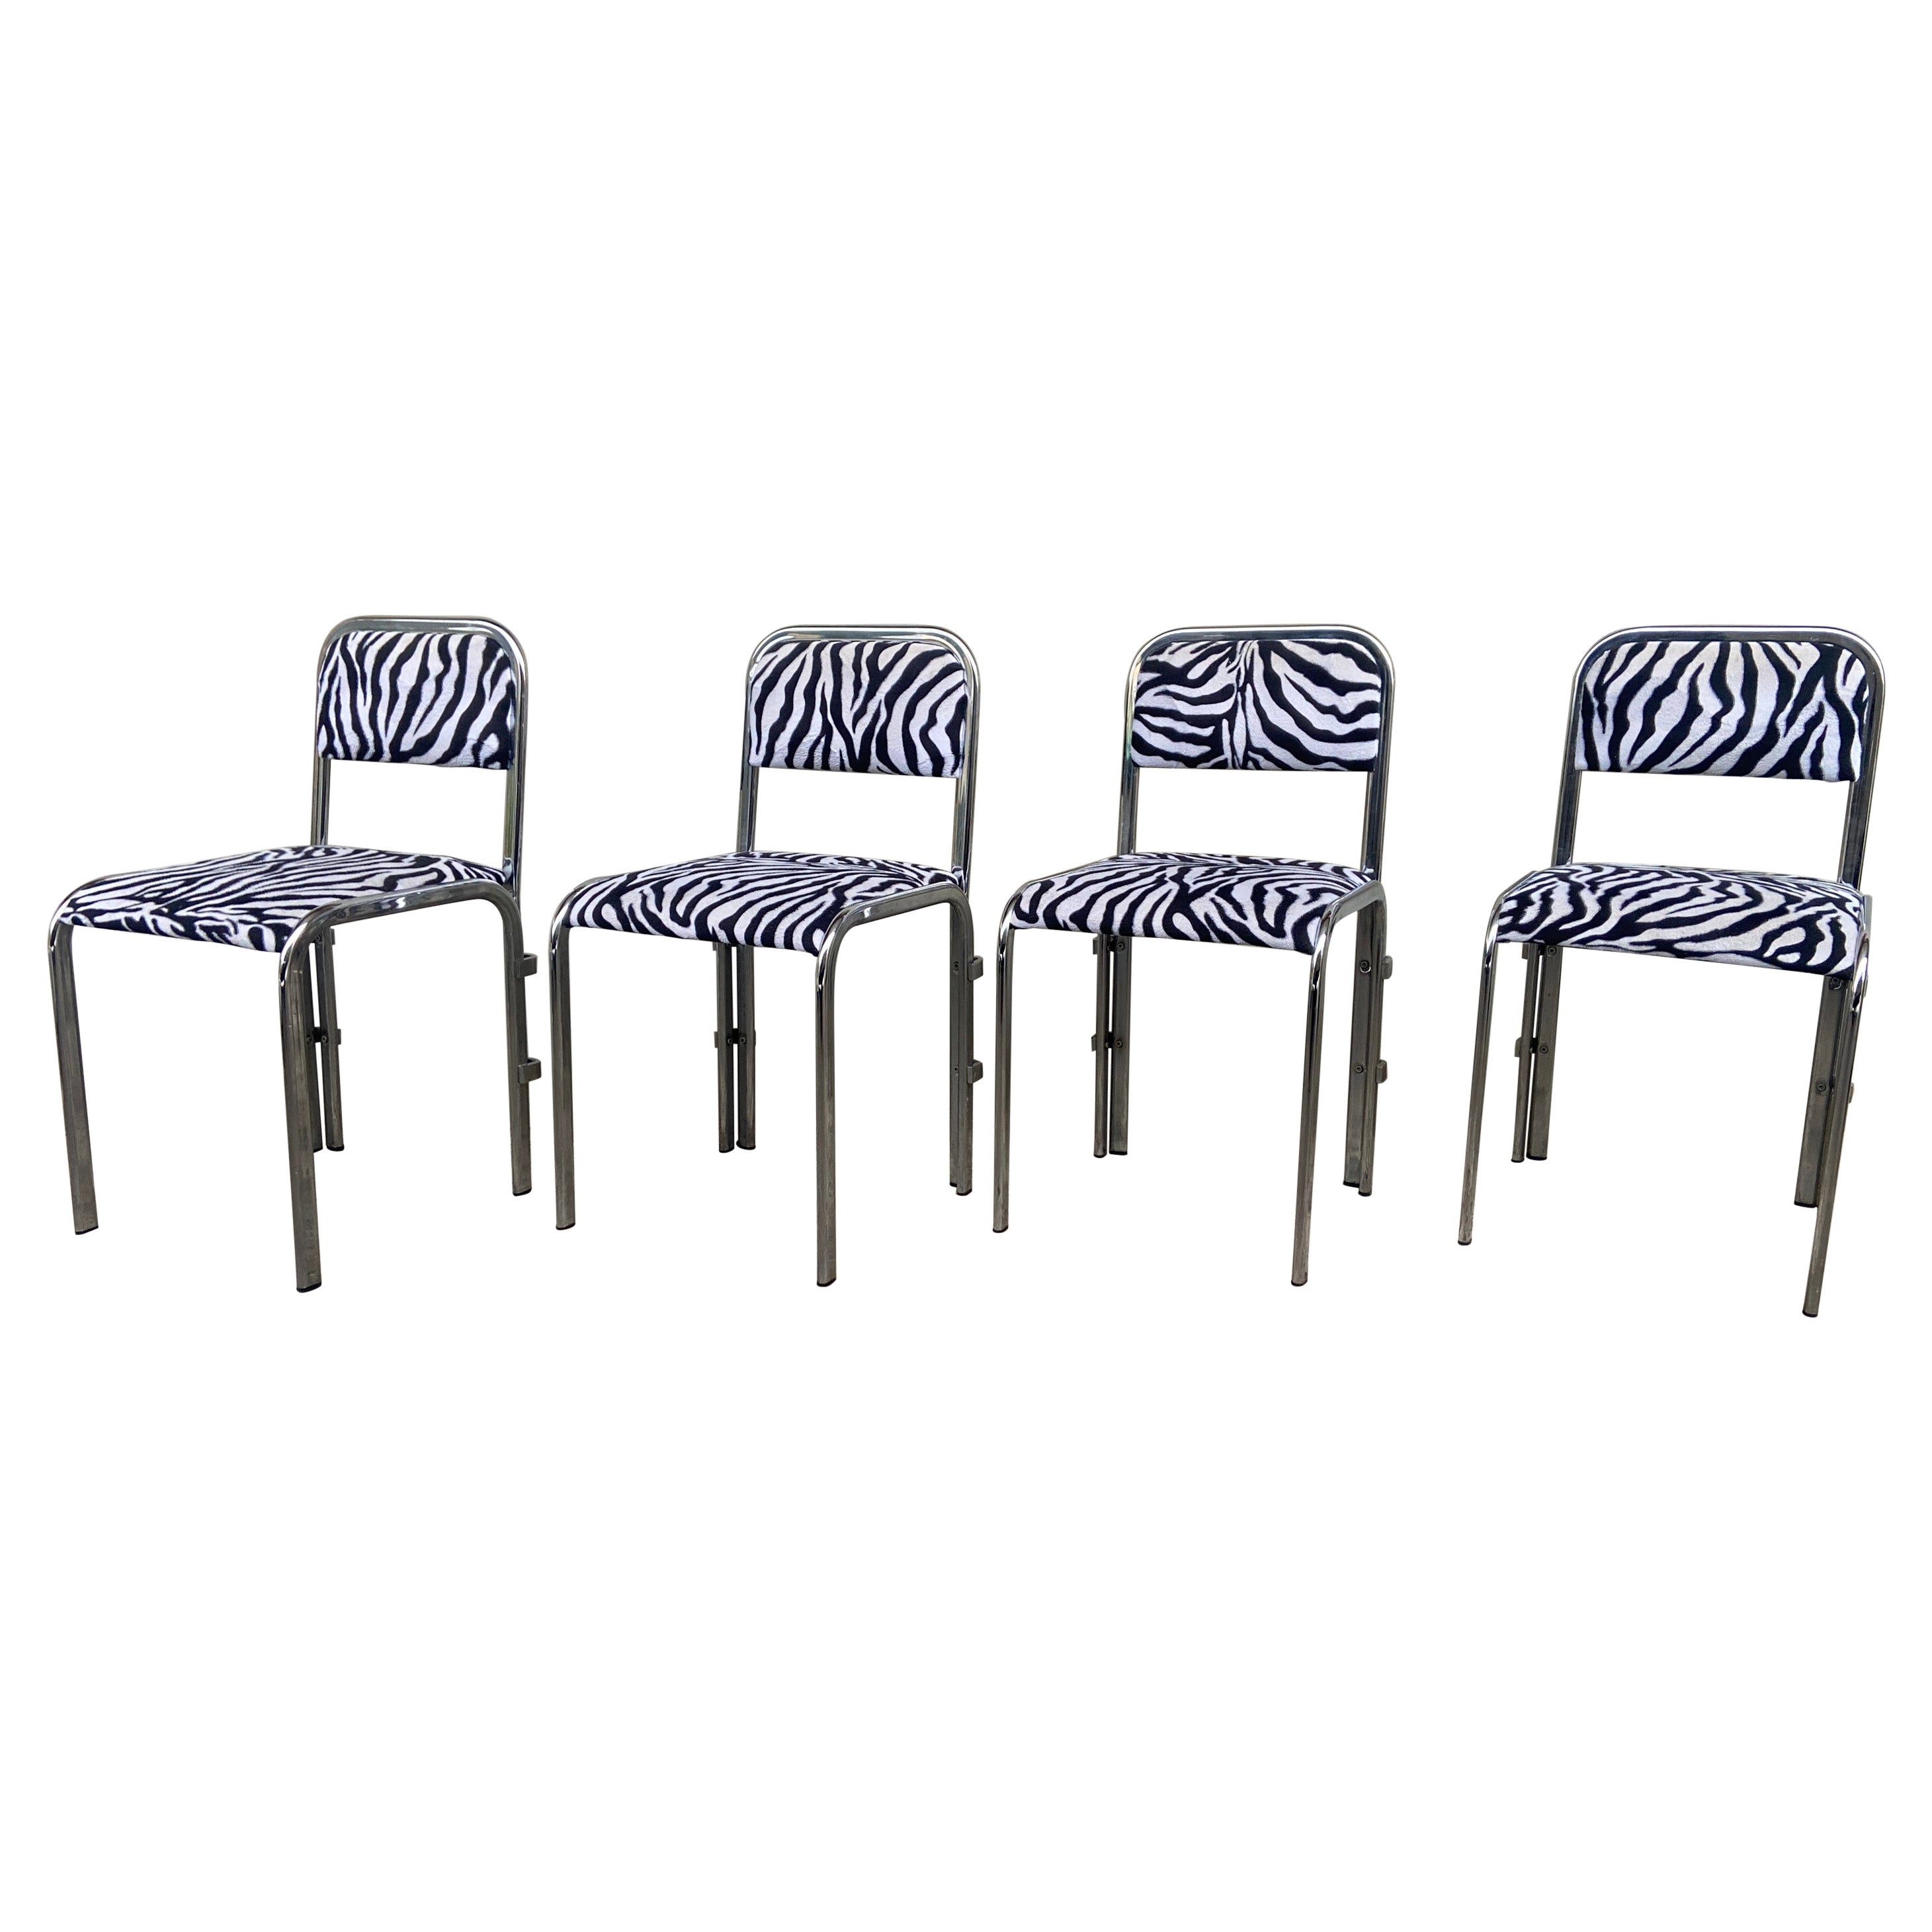 Ensemble de quatre chaises chromées françaises de style mi-siècle moderne recouvertes de tissu zébré